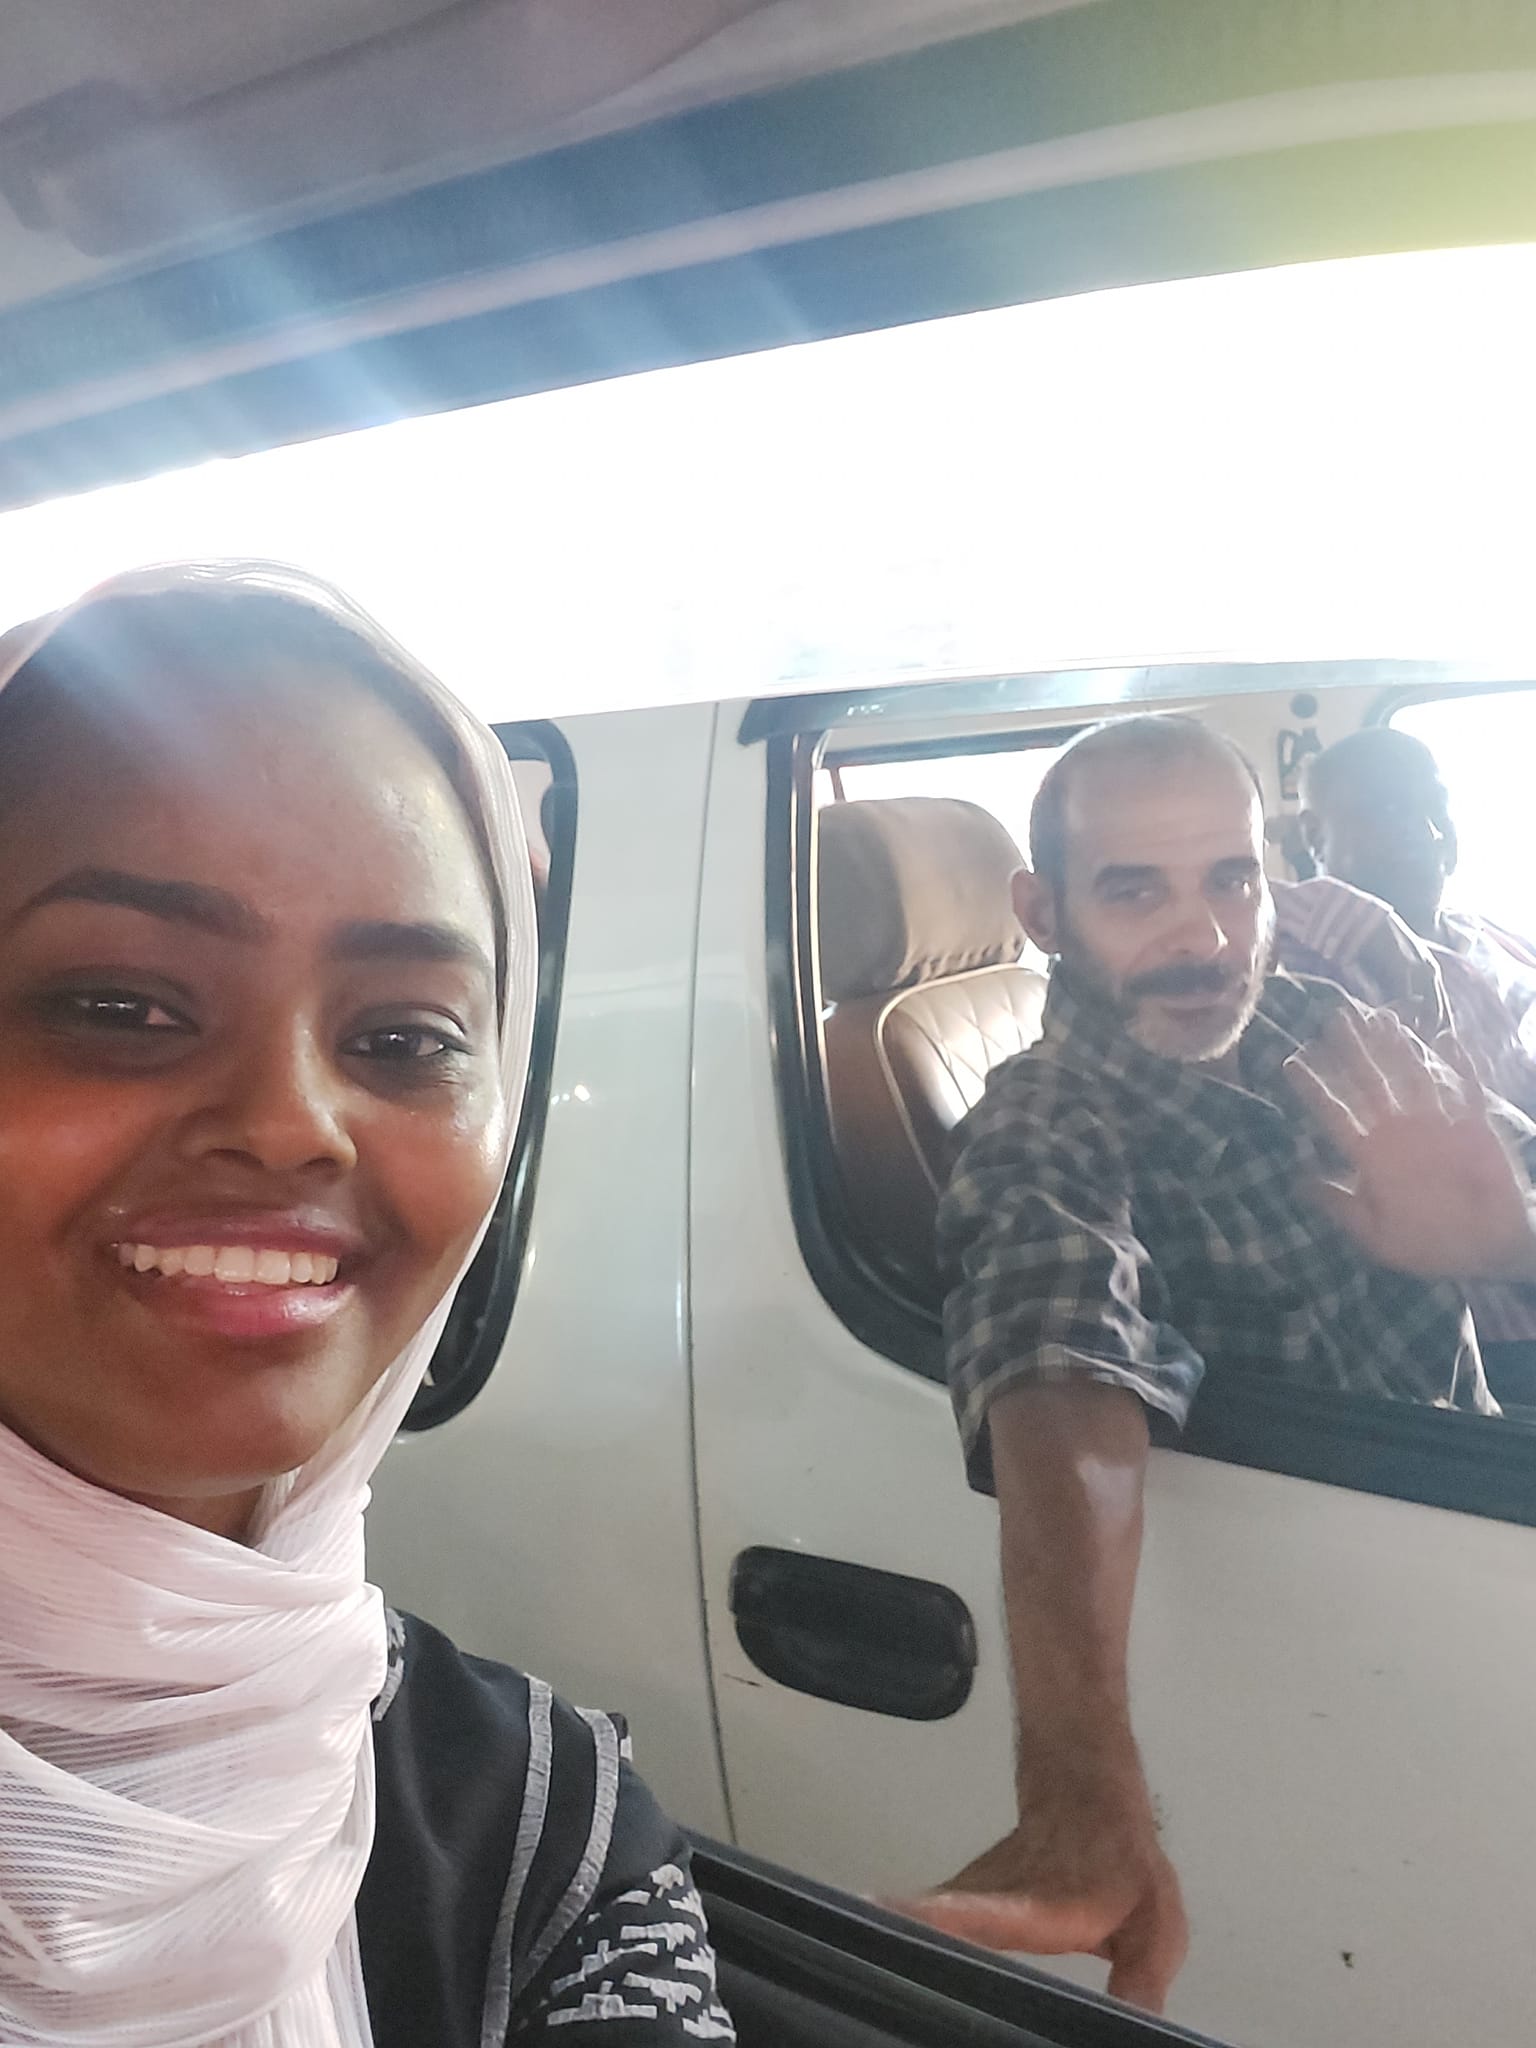 شاهد بالصورة فتاة سودانية تلتقط سيلفي في شوارع القاهرة مع سائق ميكروباص مصري معجب بالفنان